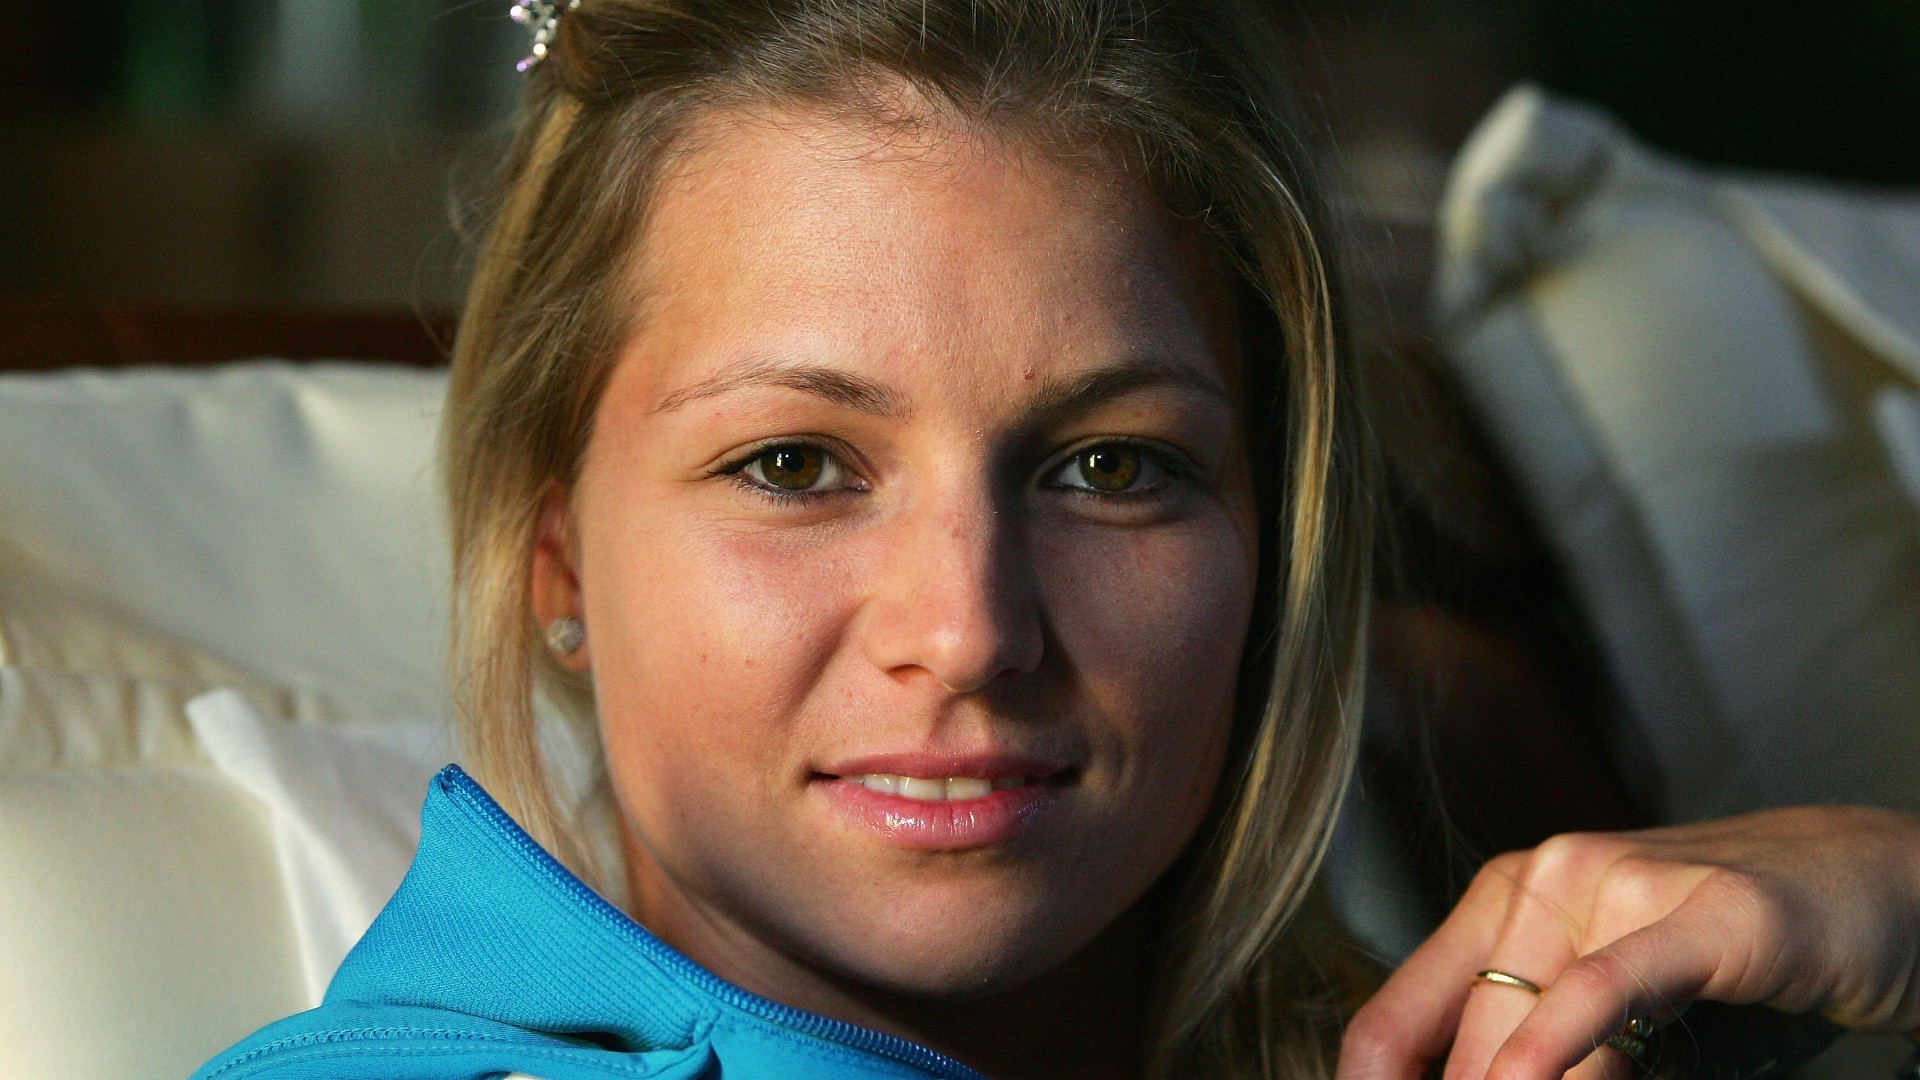 Maria Kirilenko Women Blonde Tennis Player Face Smiling 1920x1080